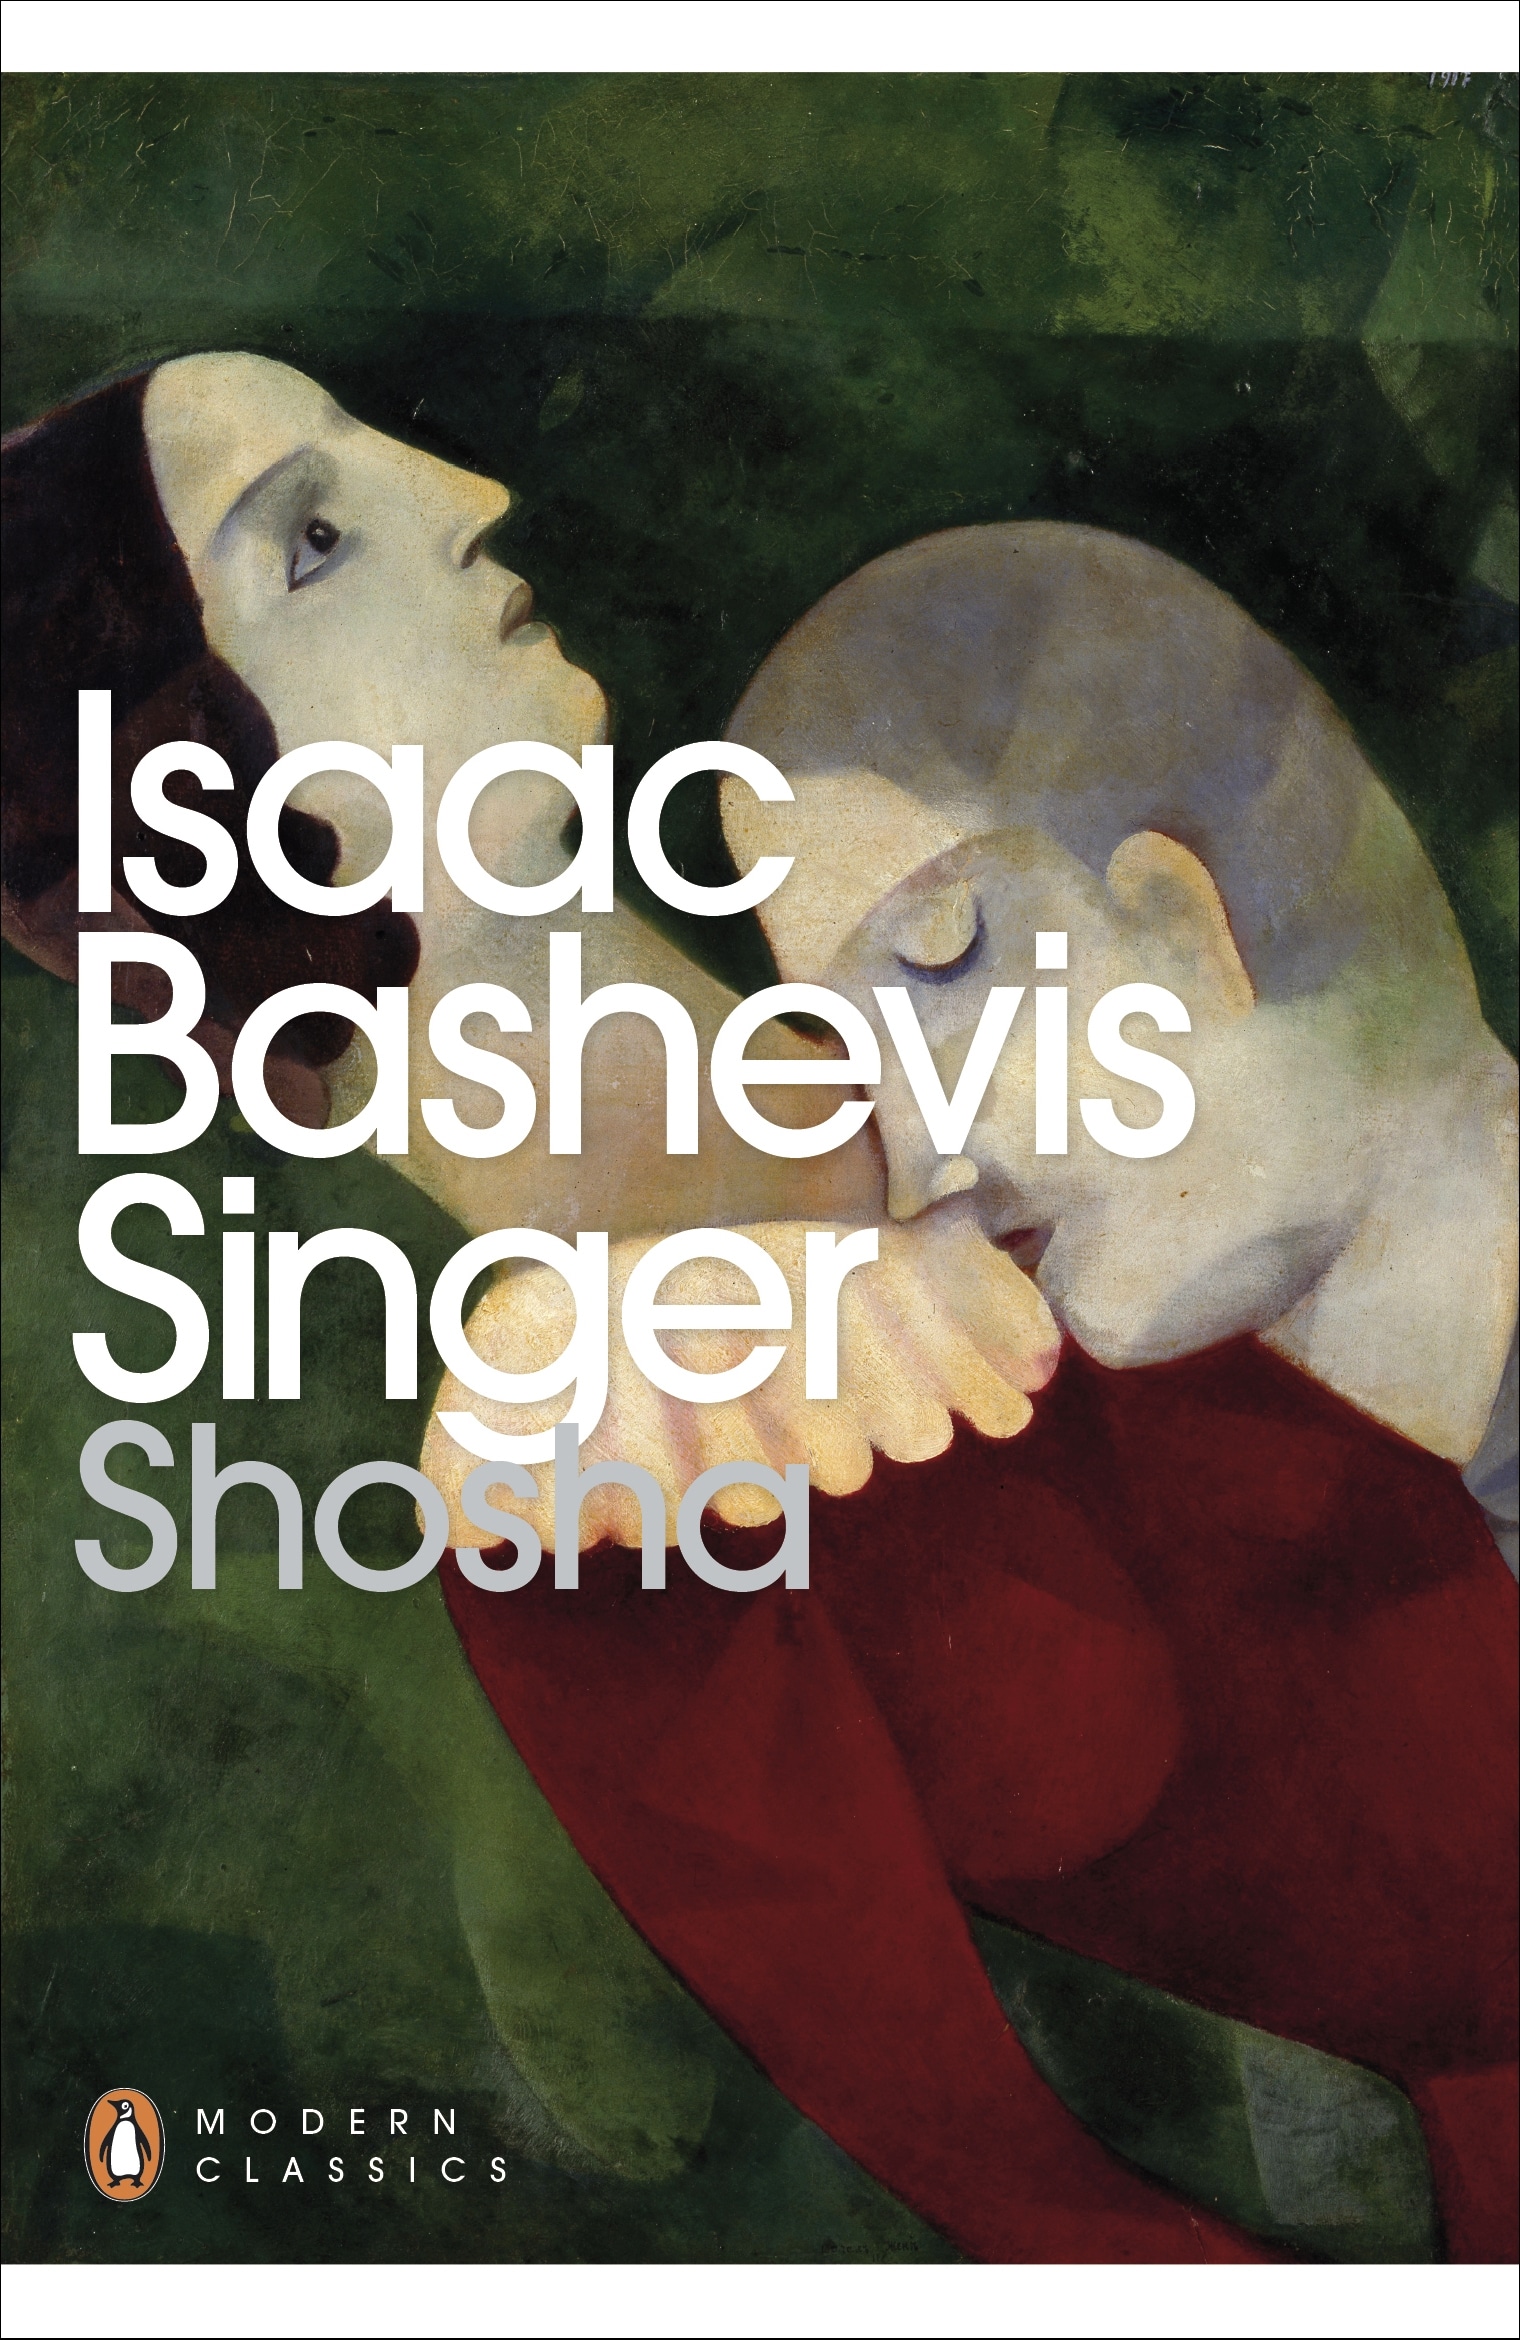 Book “Shosha” by Isaac Bashevis Singer — May 3, 2012